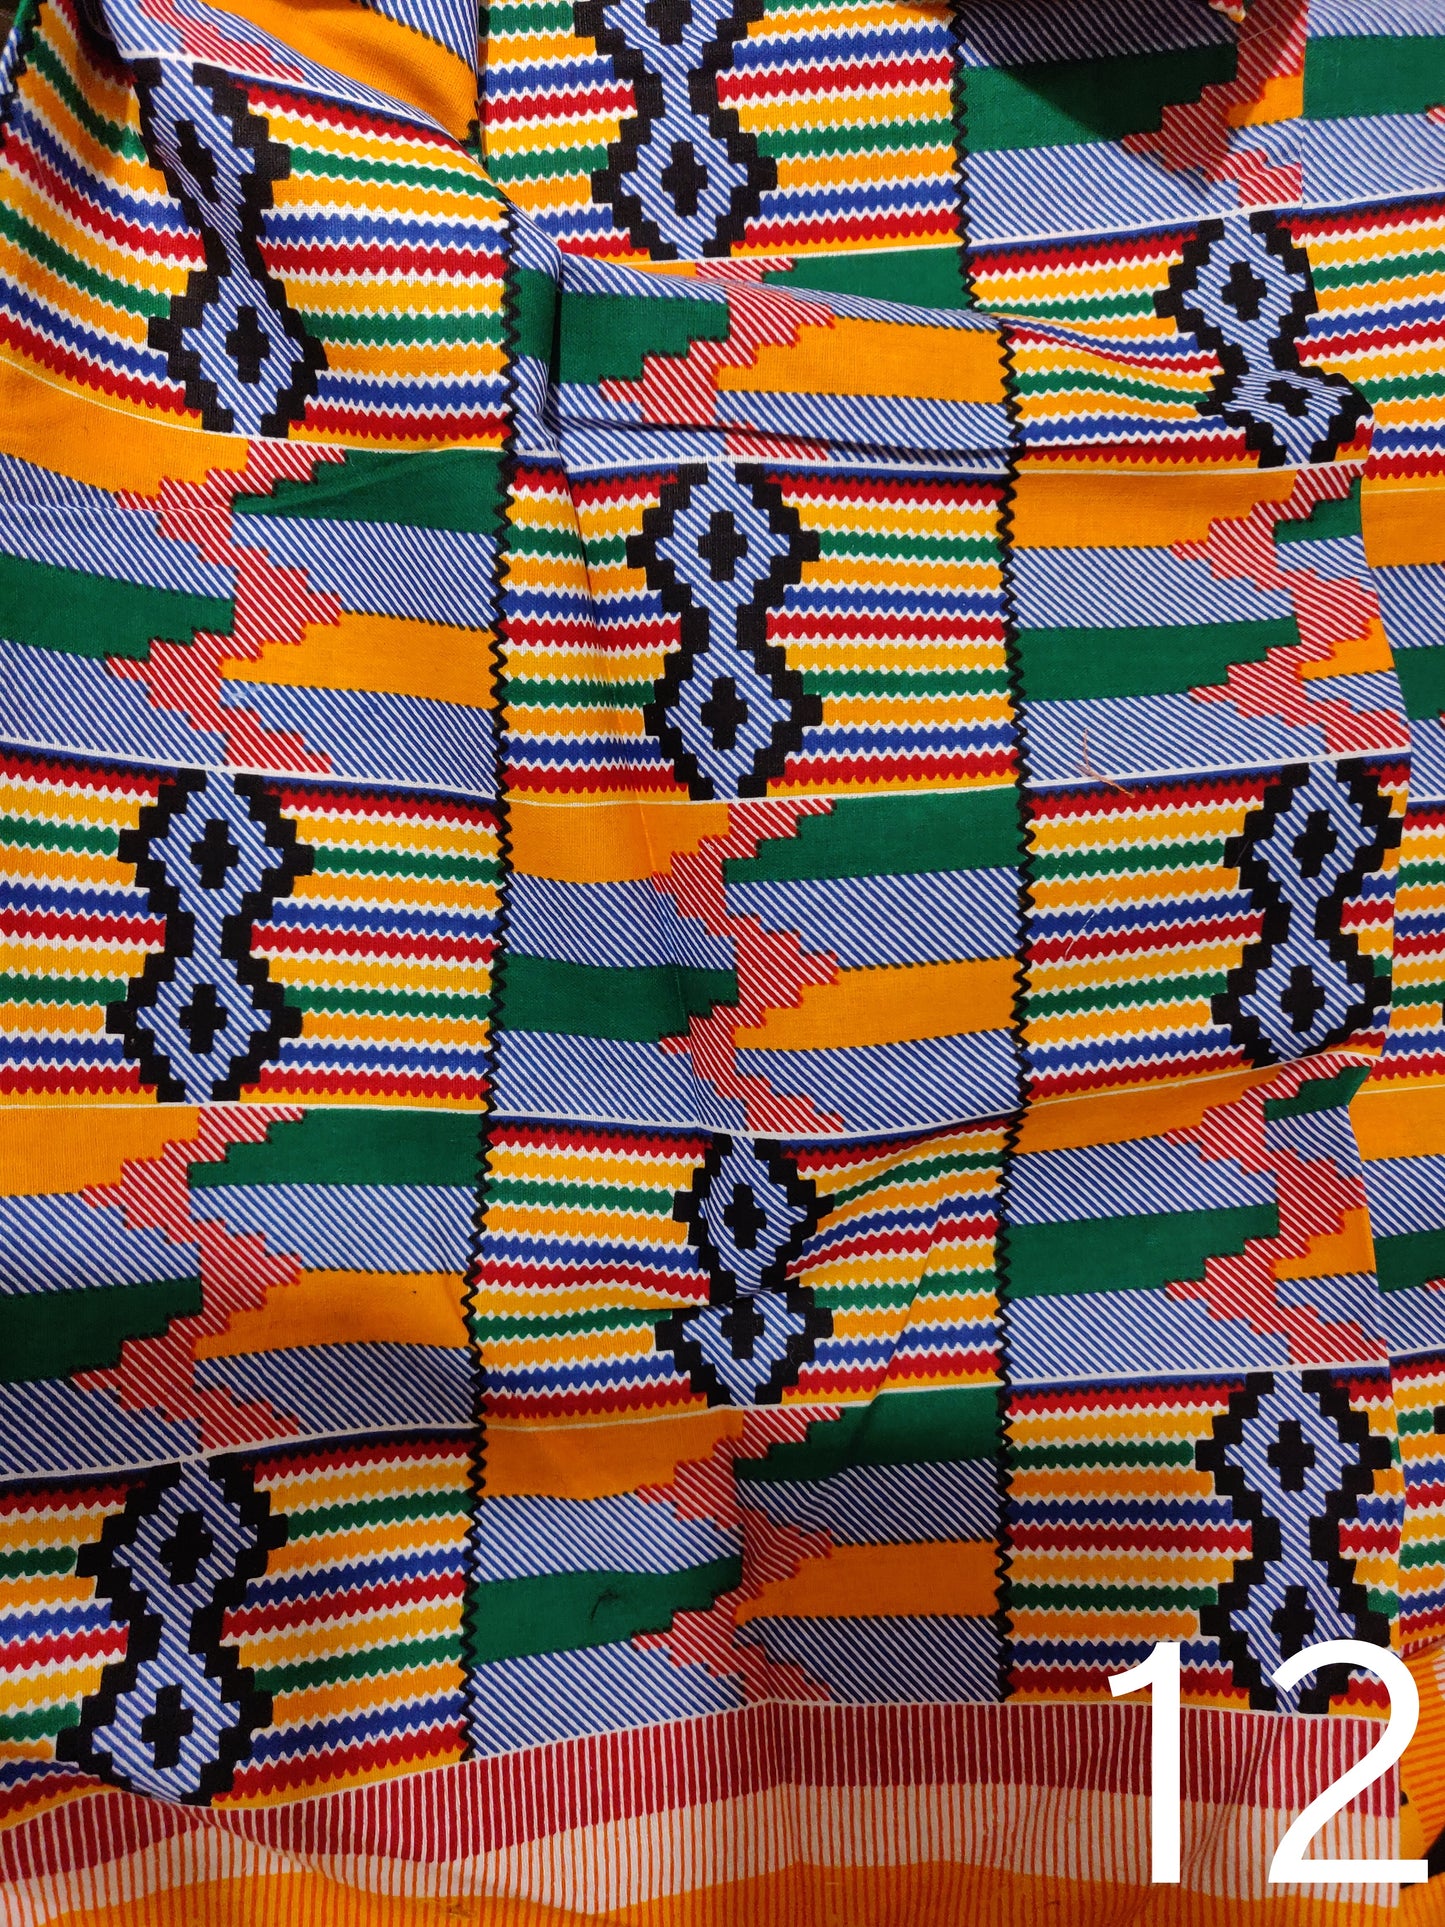 E N I D A S O - African Print Fabric Mask